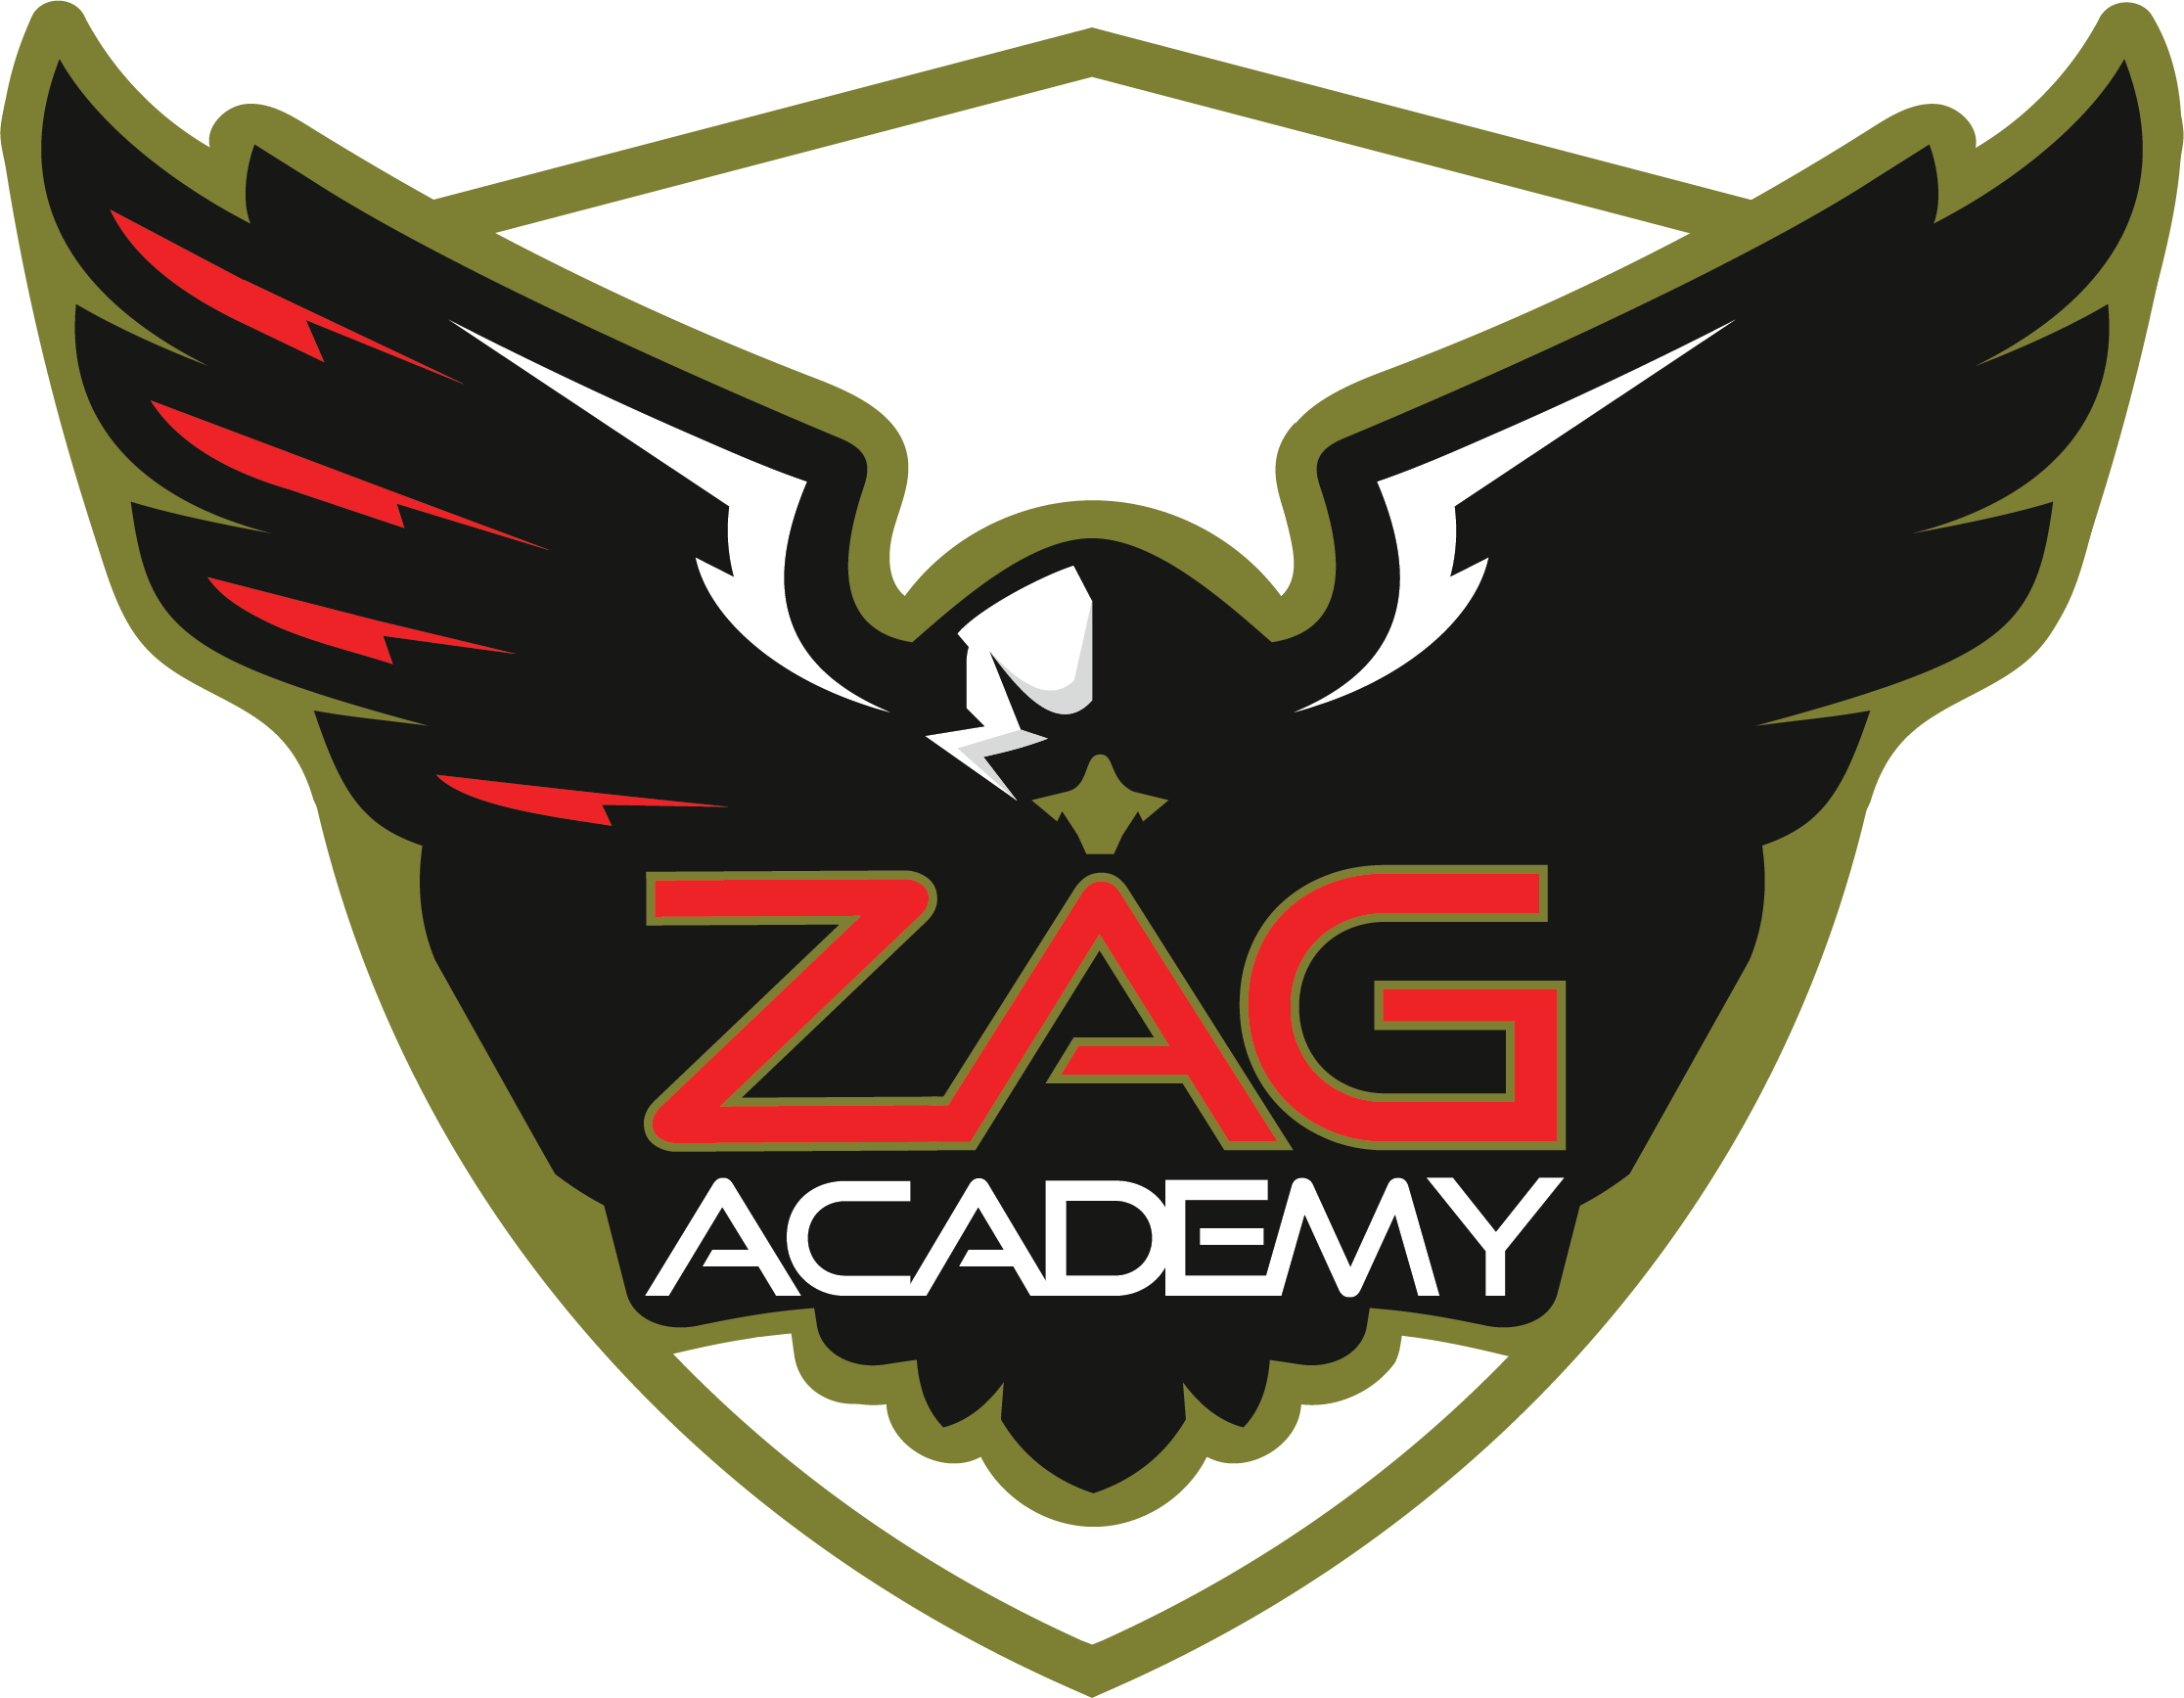 ZAG Academy